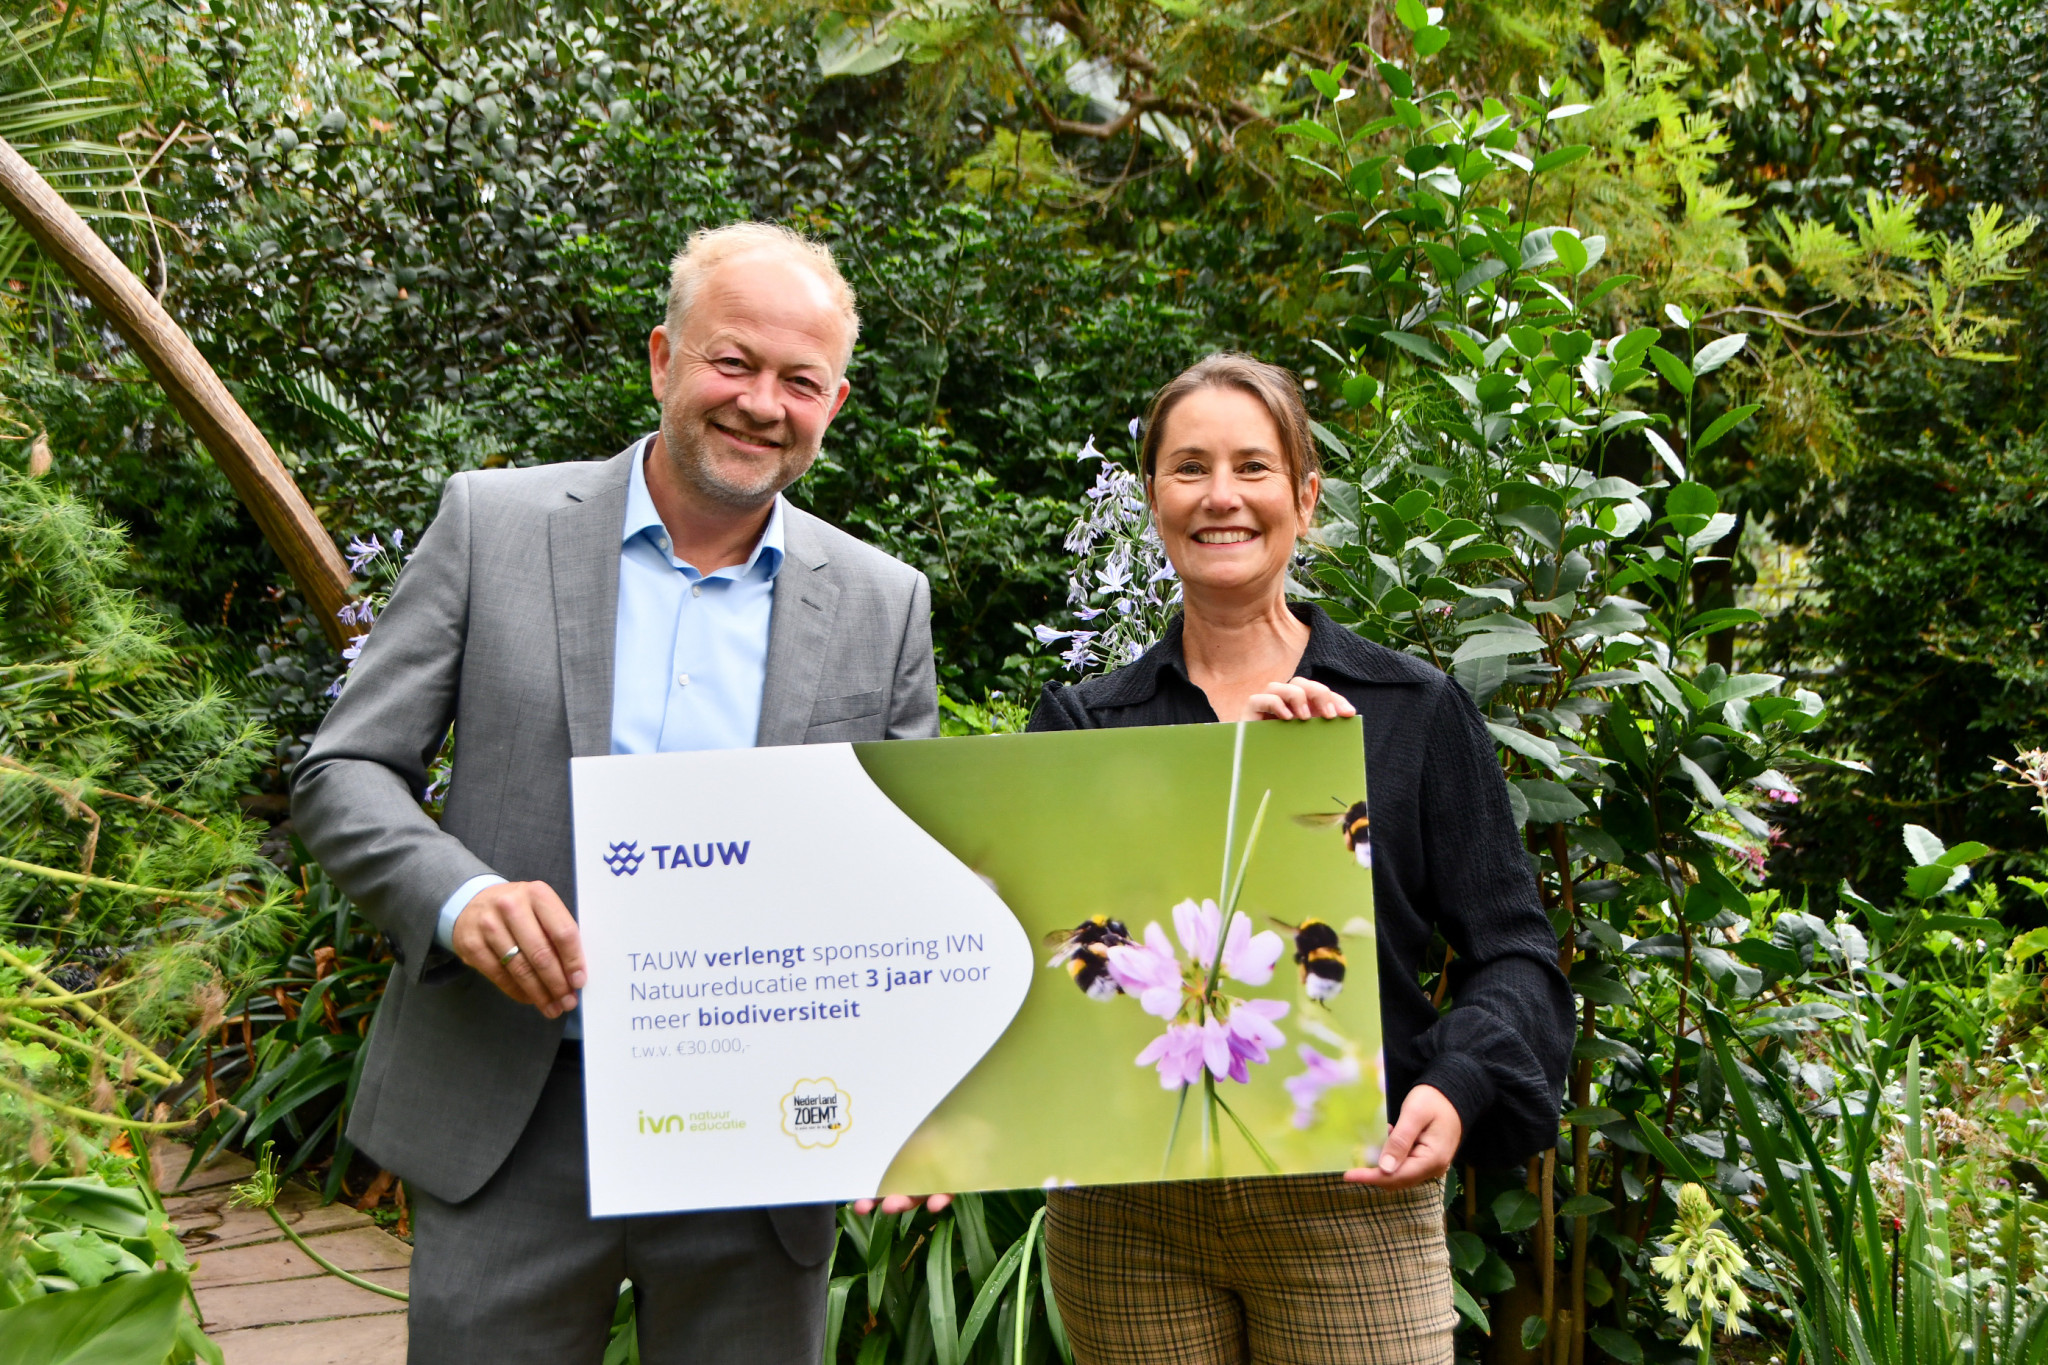 TAUW verlengt sponsorrelatie IVN met 3 jaar voor meer biodiversiteit in Nederland